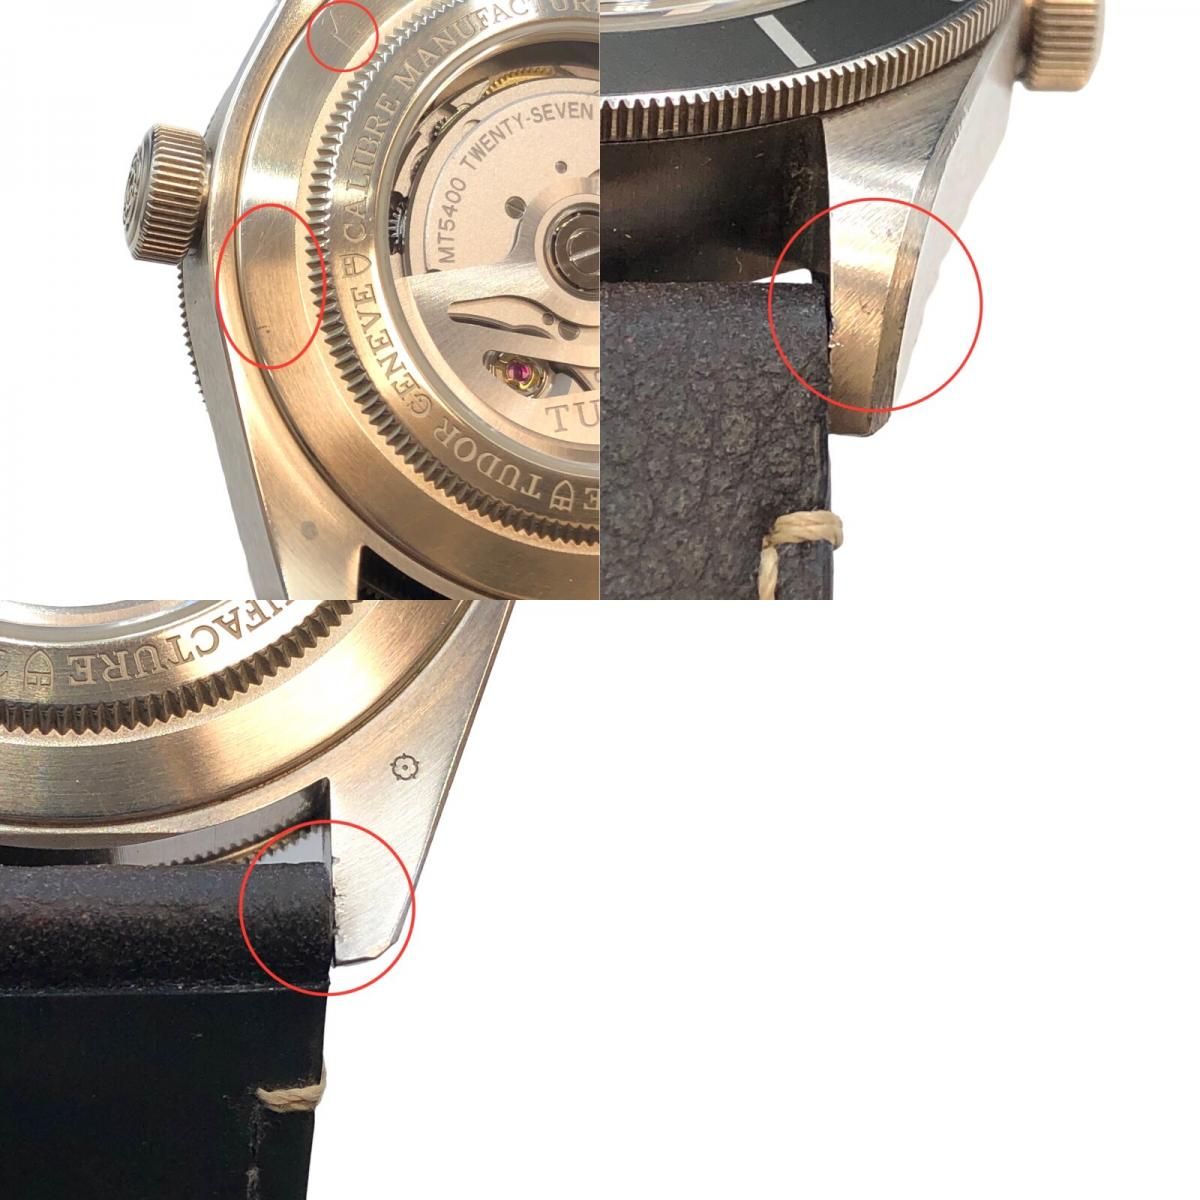 チューダー/チュードル TUDOR ブラックベイ58 79010SG トープ シルバー925 自動巻き メンズ 腕時計